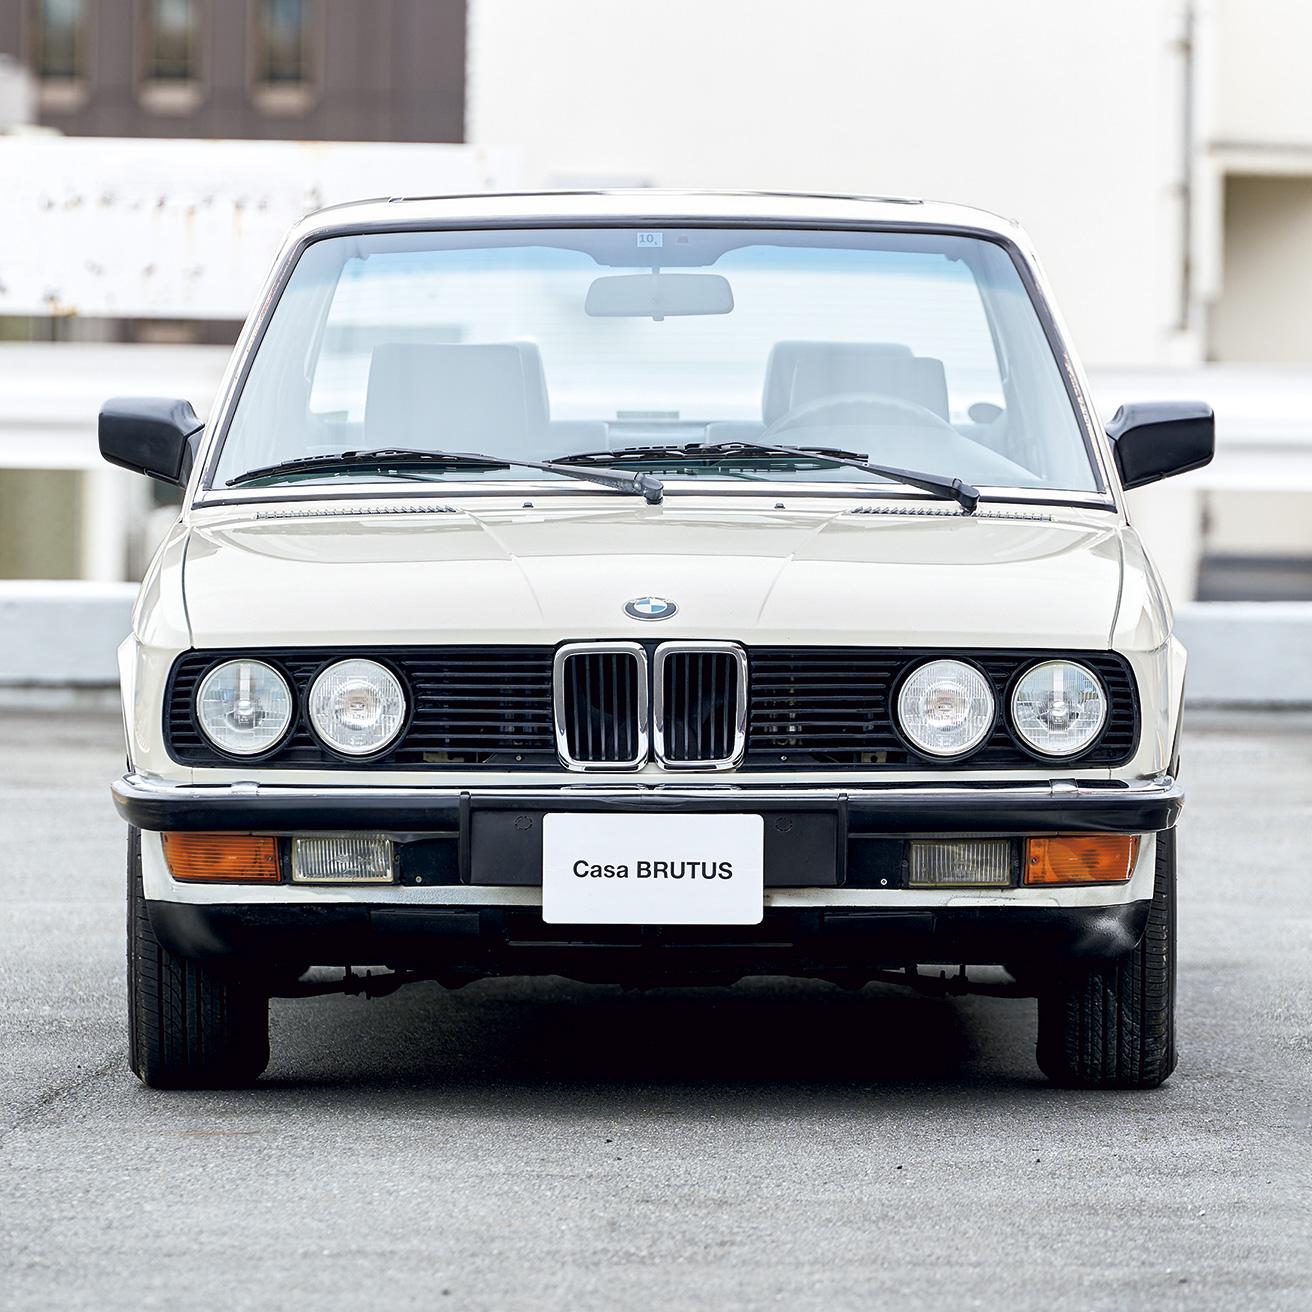 丸目4灯と小さめの “キドニーグリル” は、70〜80年代〈BMW〉のアイデンティティ。